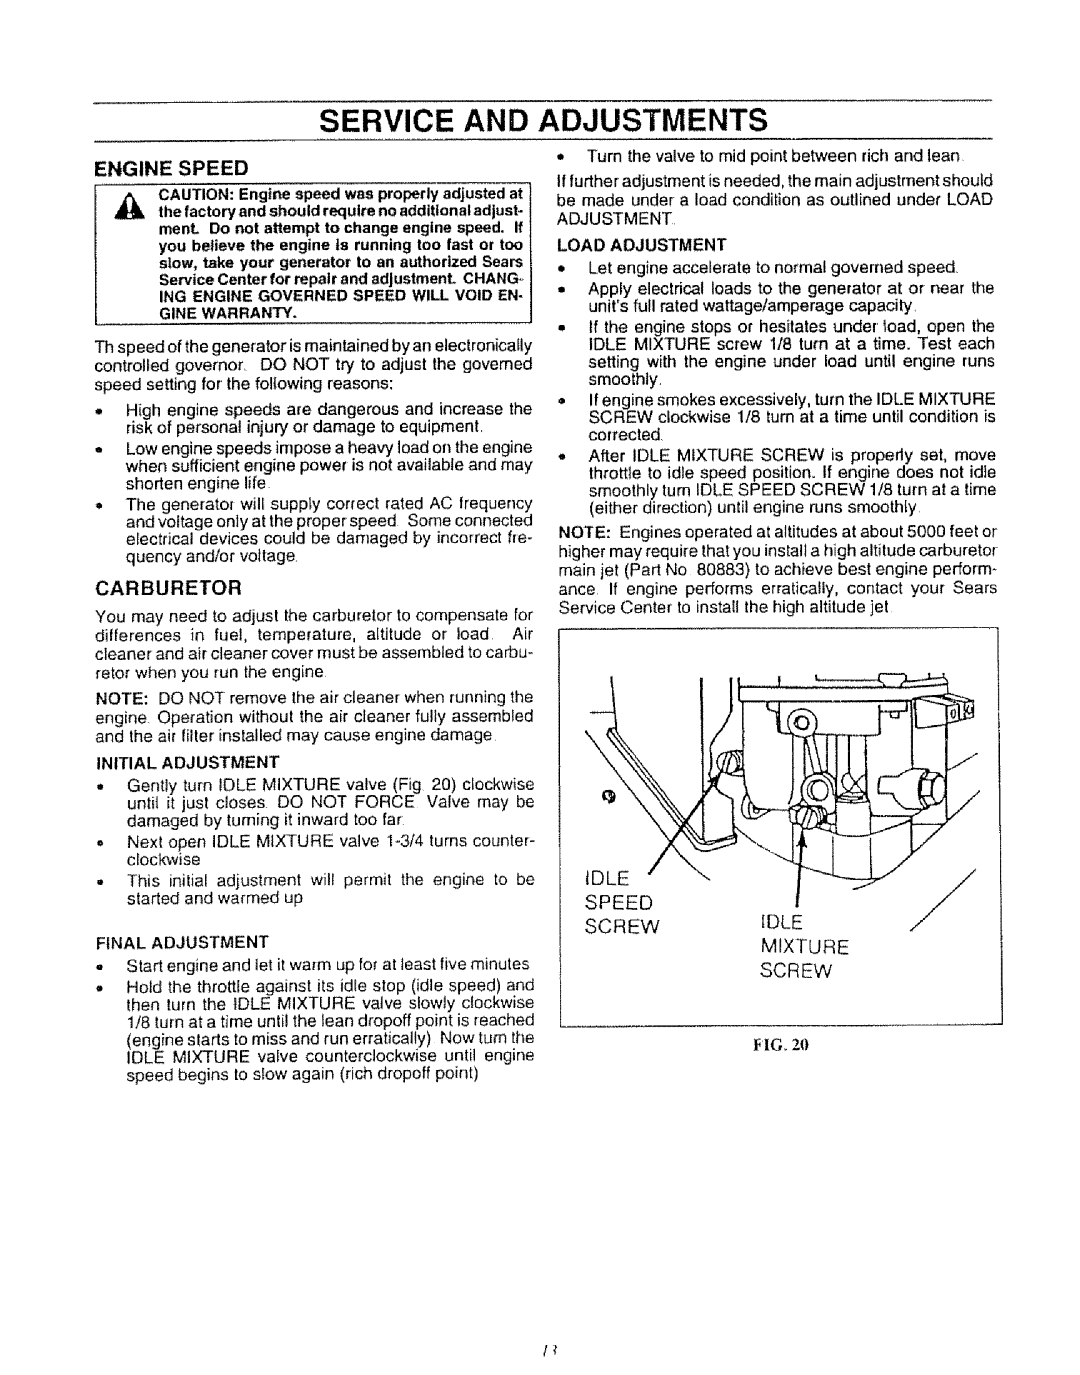 Craftsman 580.327071 owner manual Service and Adjustments, Engine Speed, Carburetor 